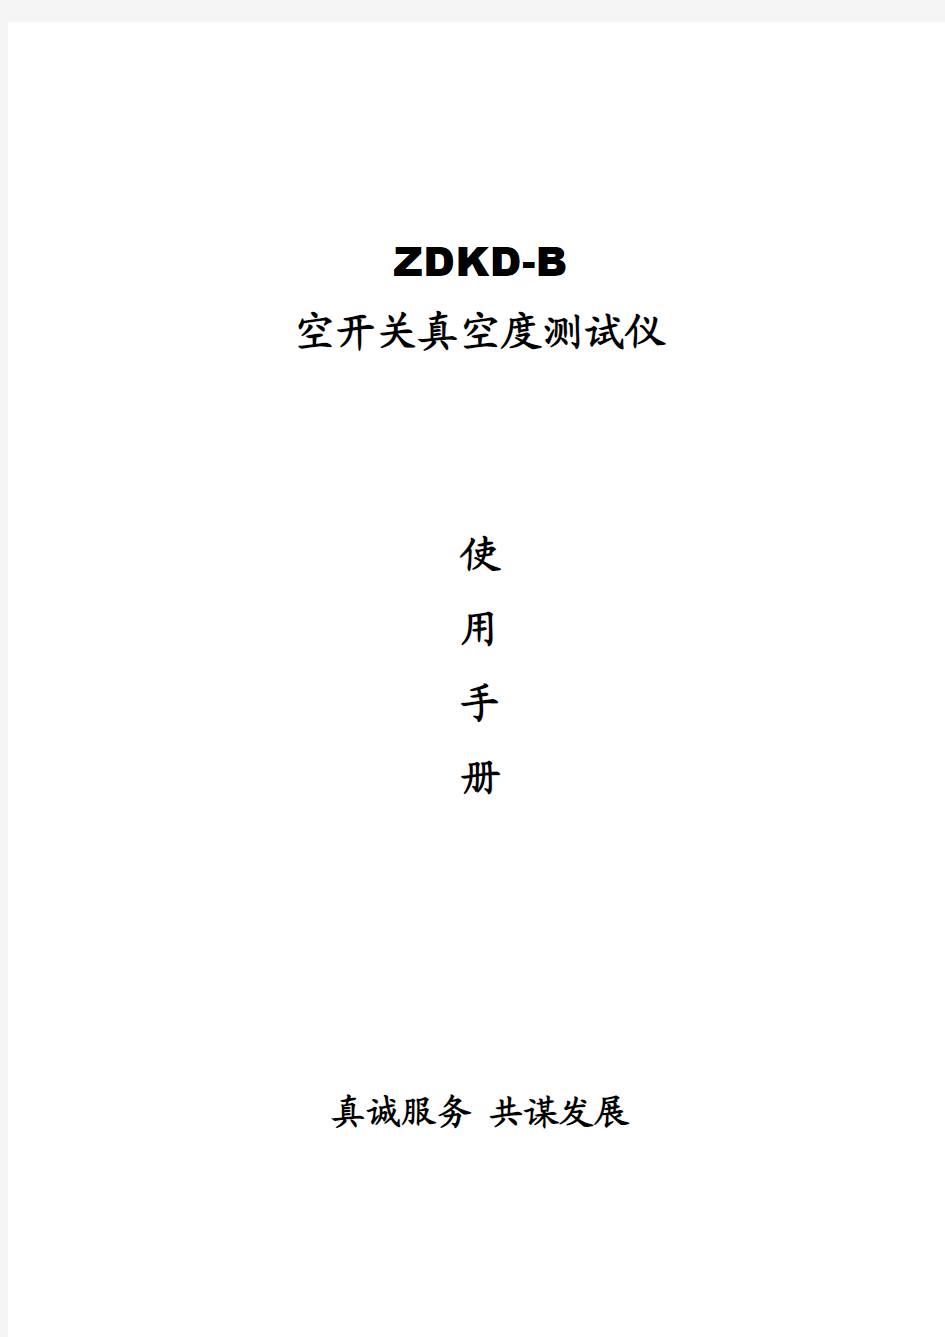 ZDKD-B真空开关真空度测试仪厂家产品手册